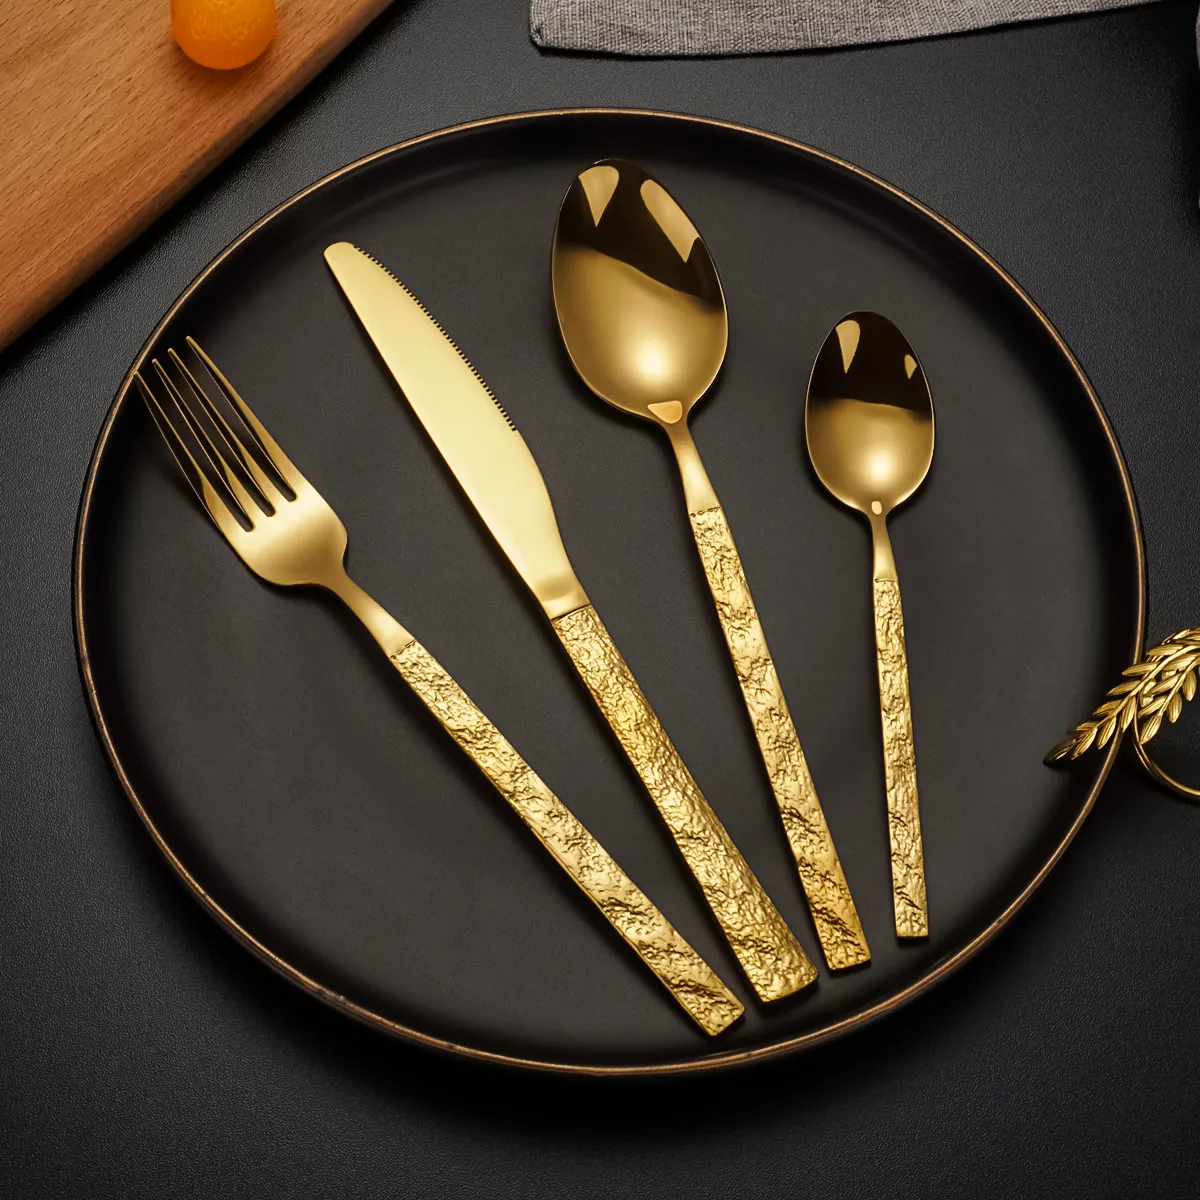 Di lusso per matrimonio argenteria in metallo coltello cucchiai forchetta Royal in acciaio inossidabile Set piatti ristorante oro Cutery Set